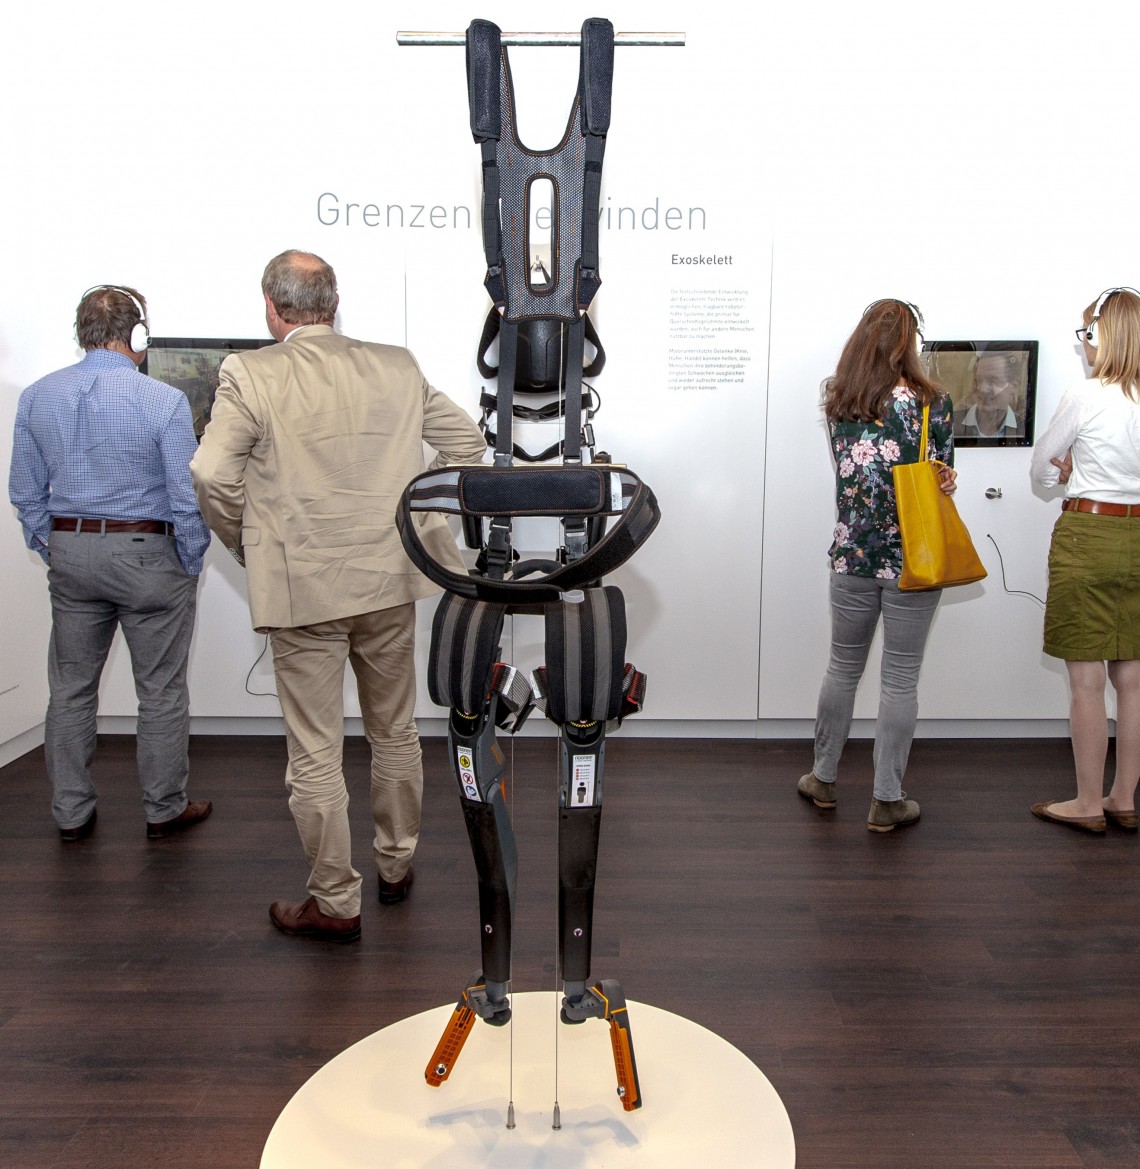 Blick in den Ausstellungsraum mit verschiedenen Exoskeletten und Besucherinnen und Besuchern beim Betrachten der Exponate